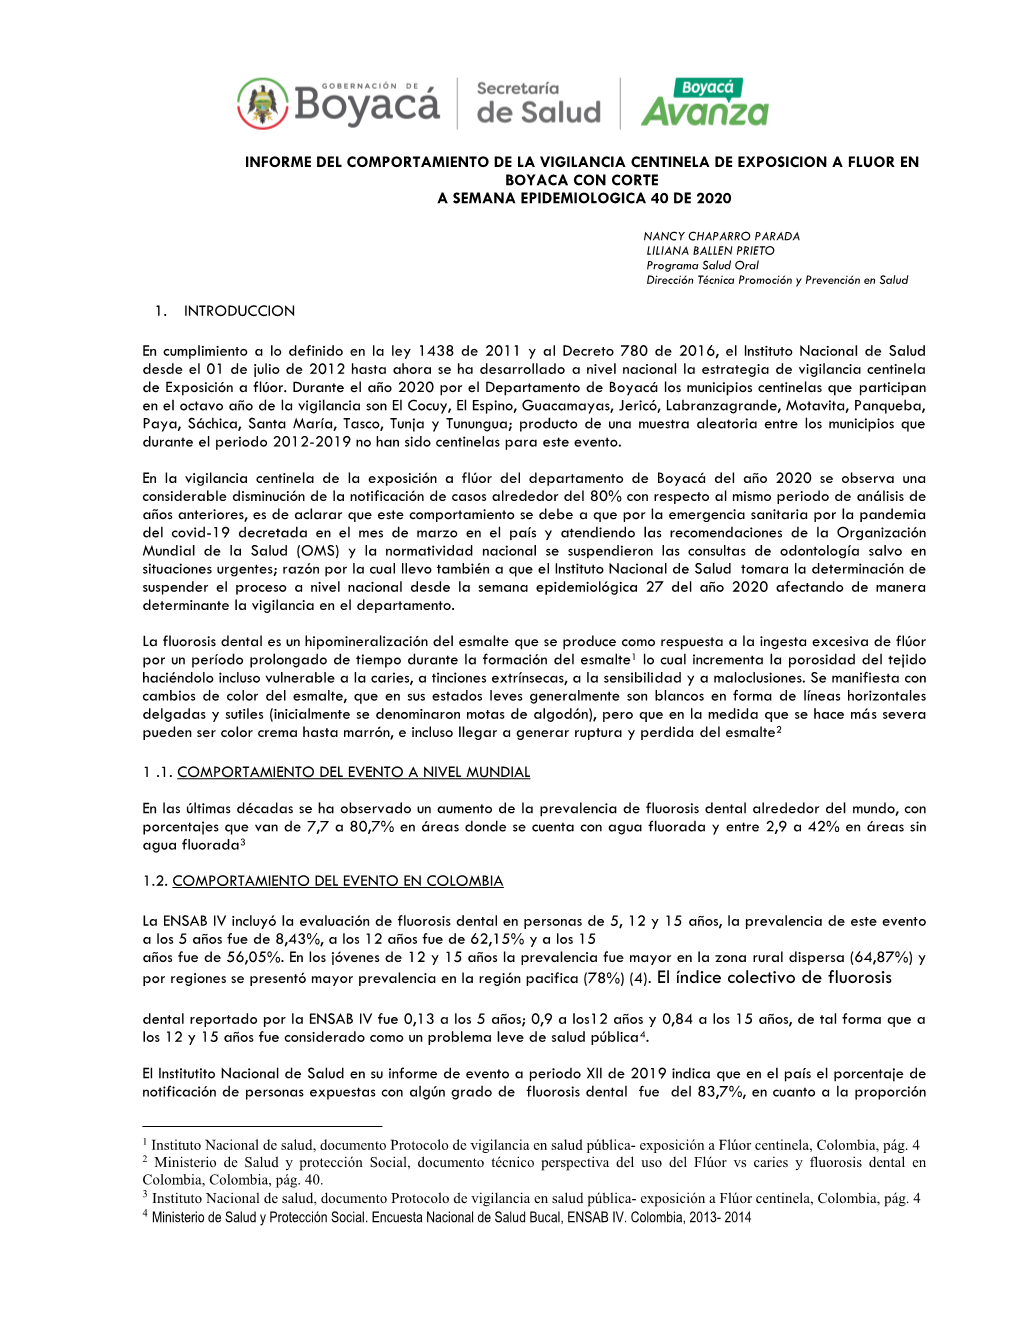 Informe Del Comportamiento De La Vigilancia Centinela De Exposicion a Fluor En Boyaca Con Corte a Semana Epidemiologica 40 De 2020